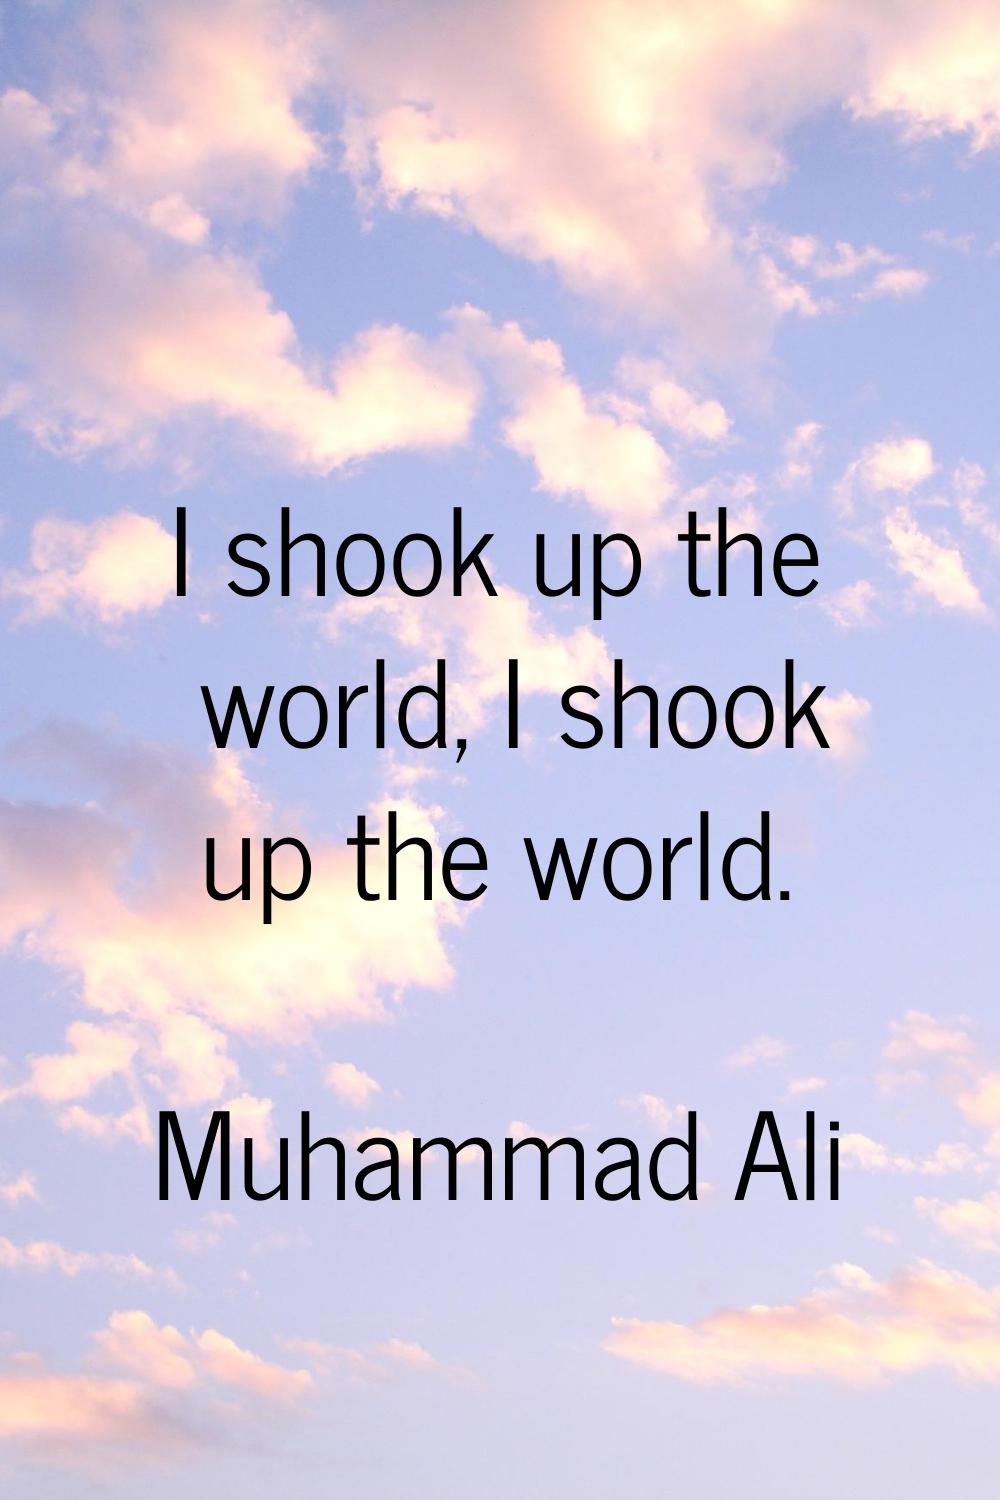 I shook up the world, I shook up the world.